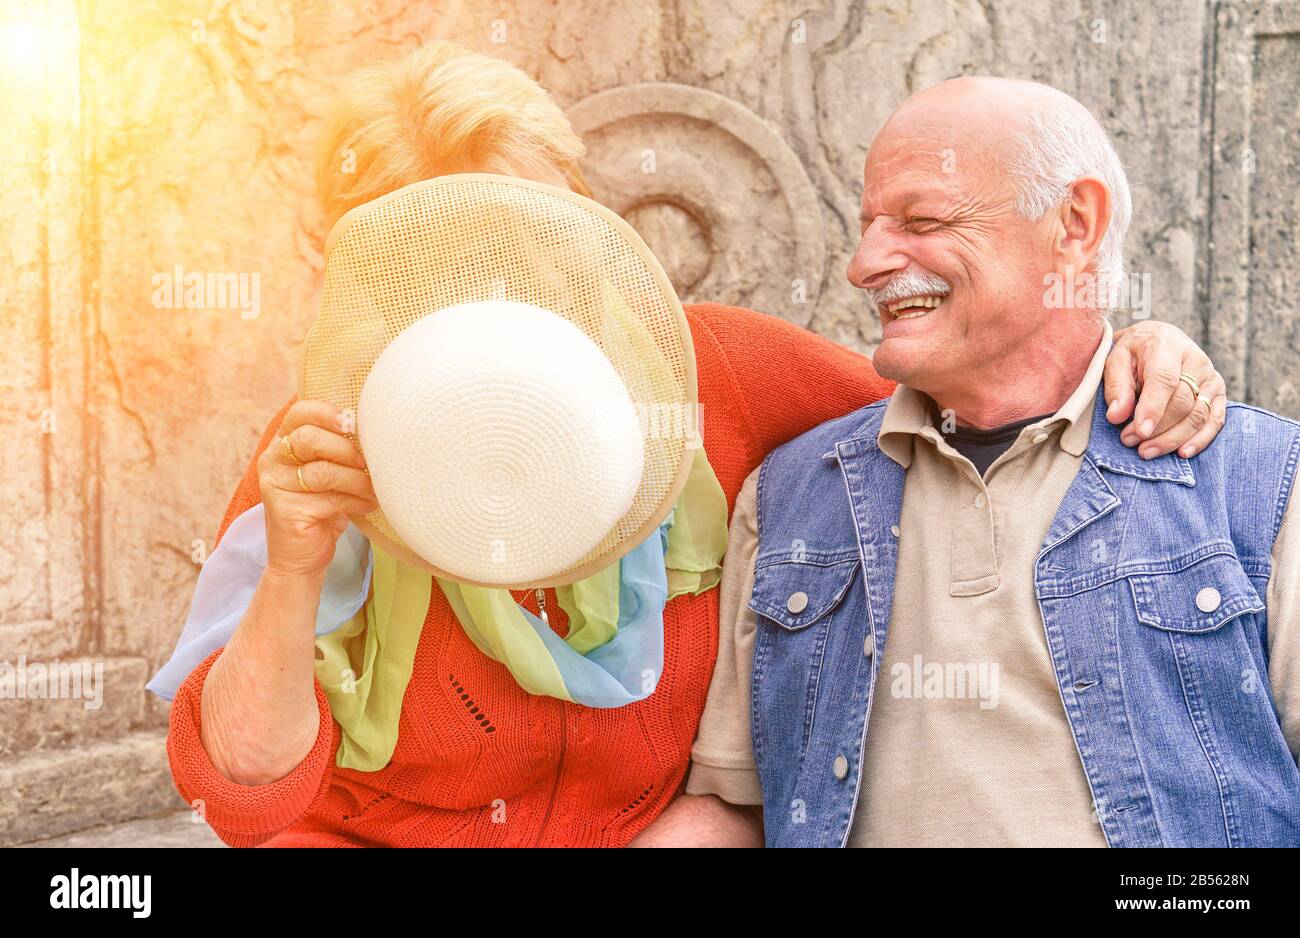 Senioren-Paar hat Spaß, während Frau ihr Gesicht von der Sonne mit Retro-Mode-Hut bedeckt - Fröhlicher älterer aktiver Lebensstil im Old Town City Contest - Lov Stockfoto